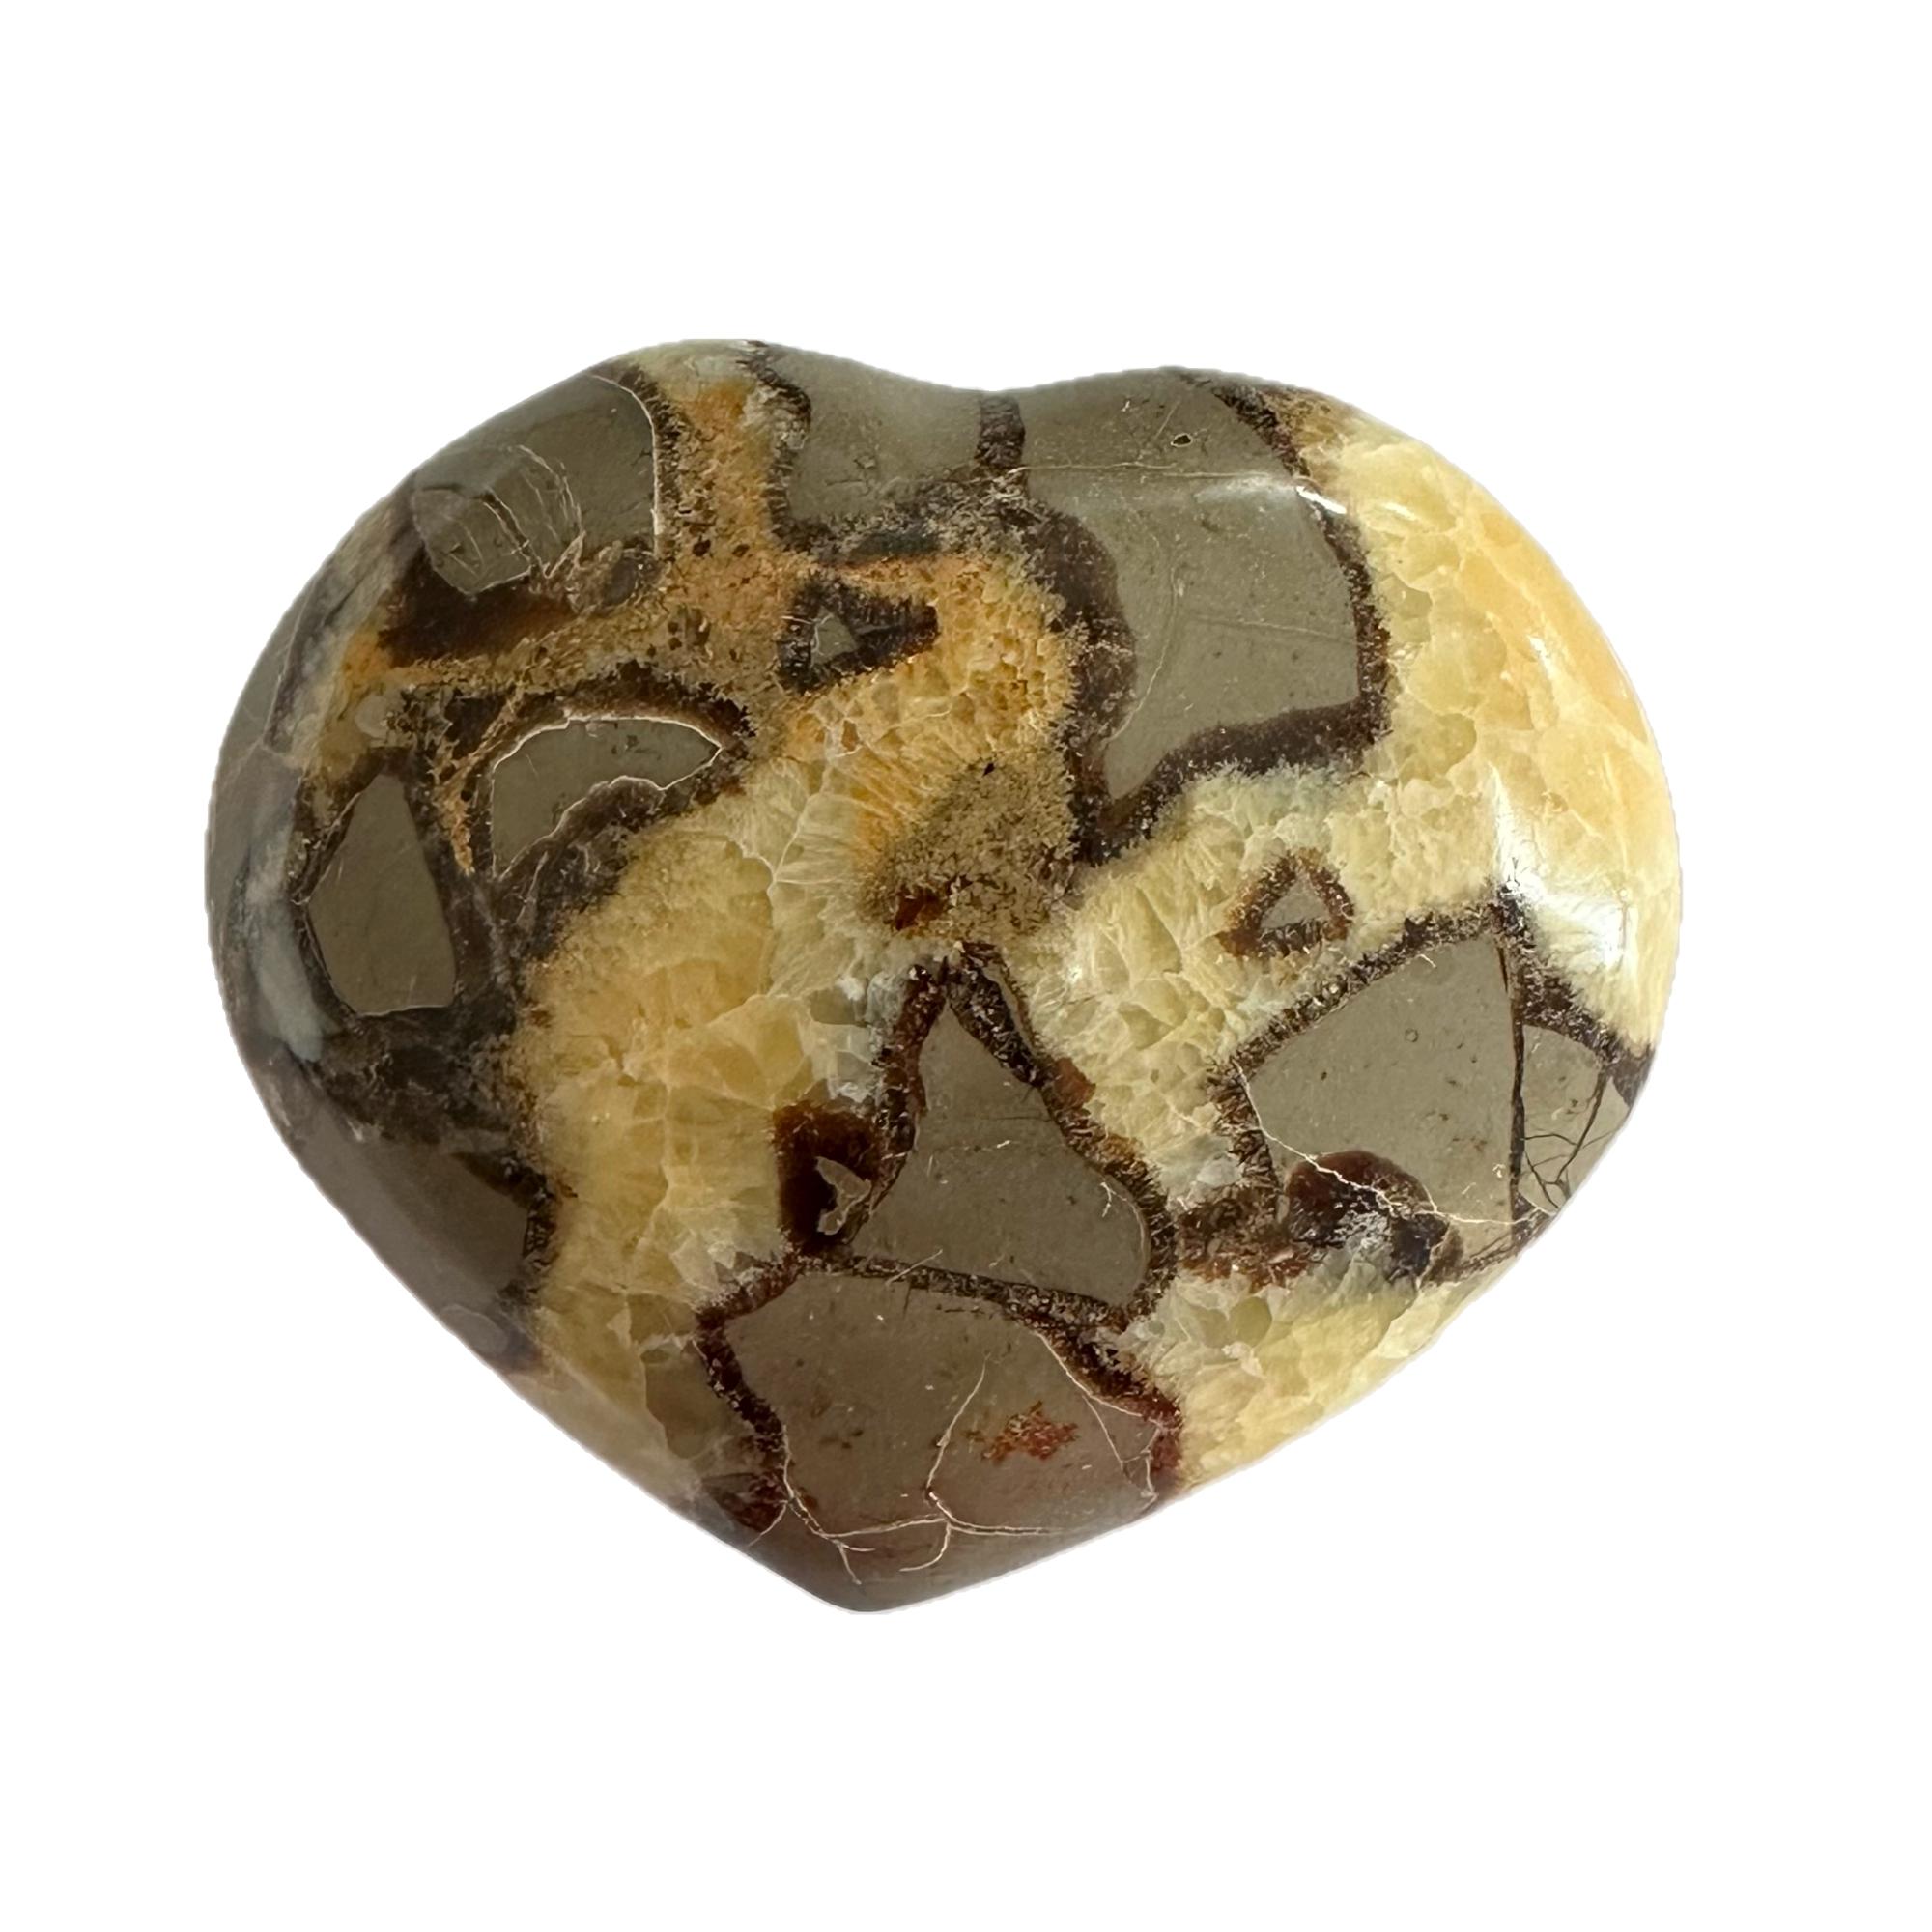 Septarian Heart- Delta Utah, Calcite and Aragonite beauty Prehistoric Online